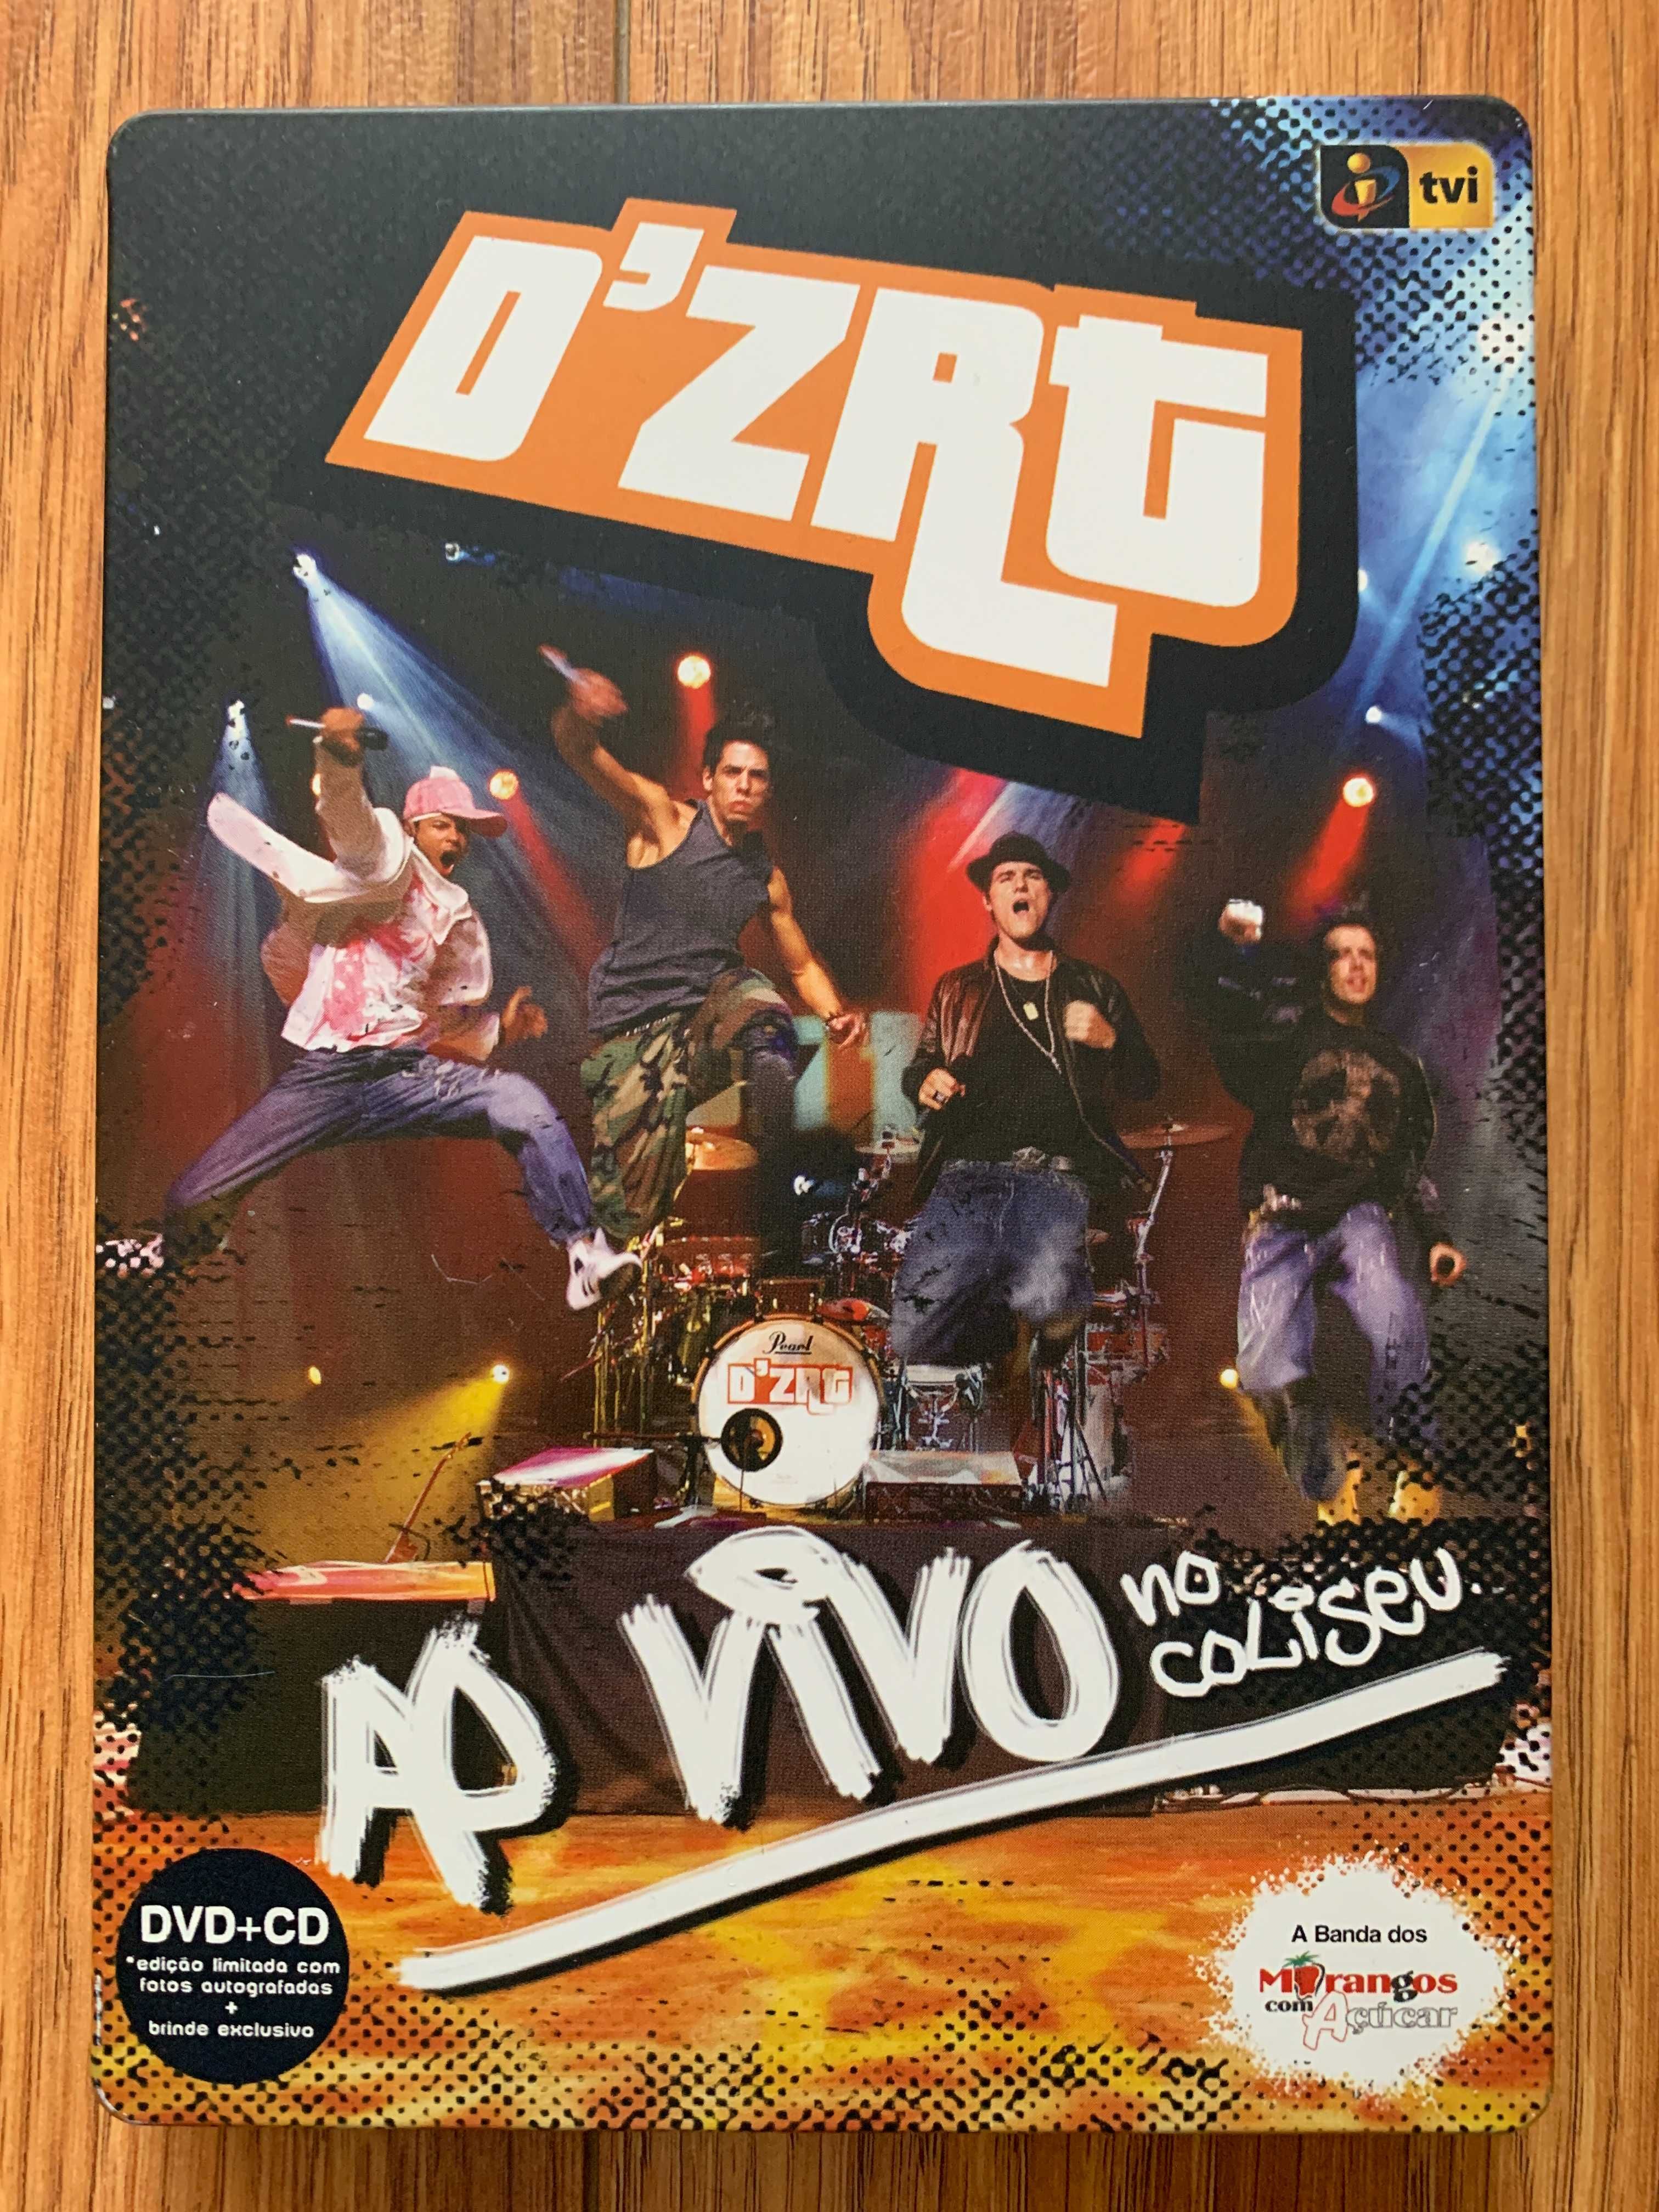 D'zrt - Ao Vivo no Coliseu  - CD + DVD + Fotos